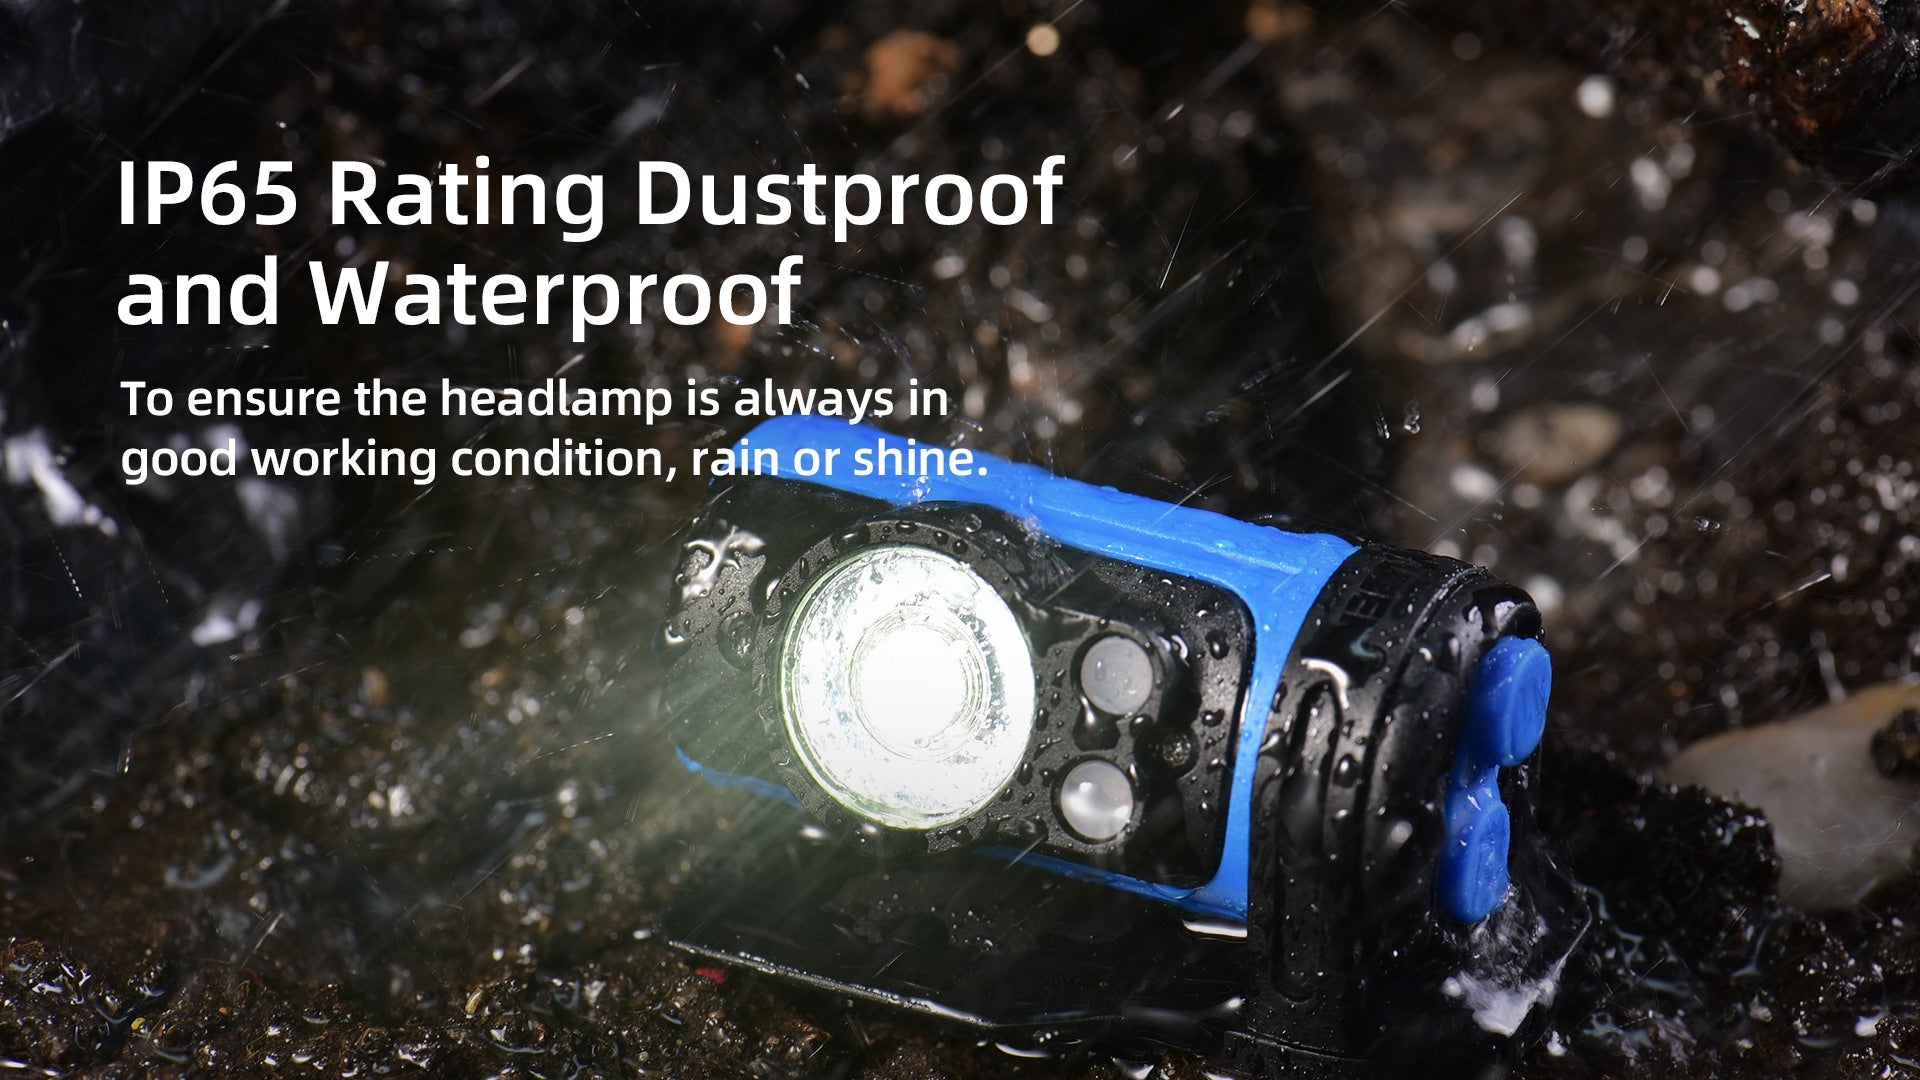 IP65 Dustproof and Waterproof